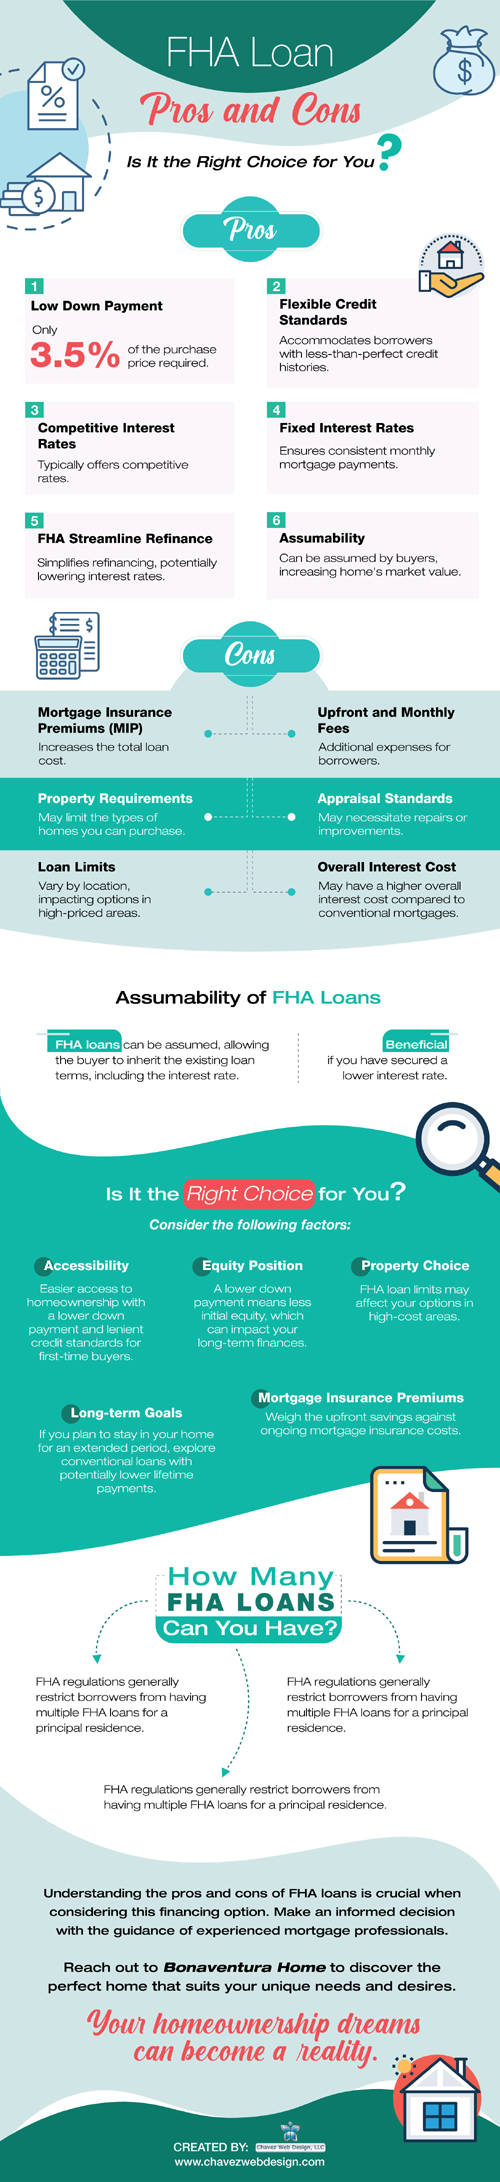 fha-loans-pros-cons